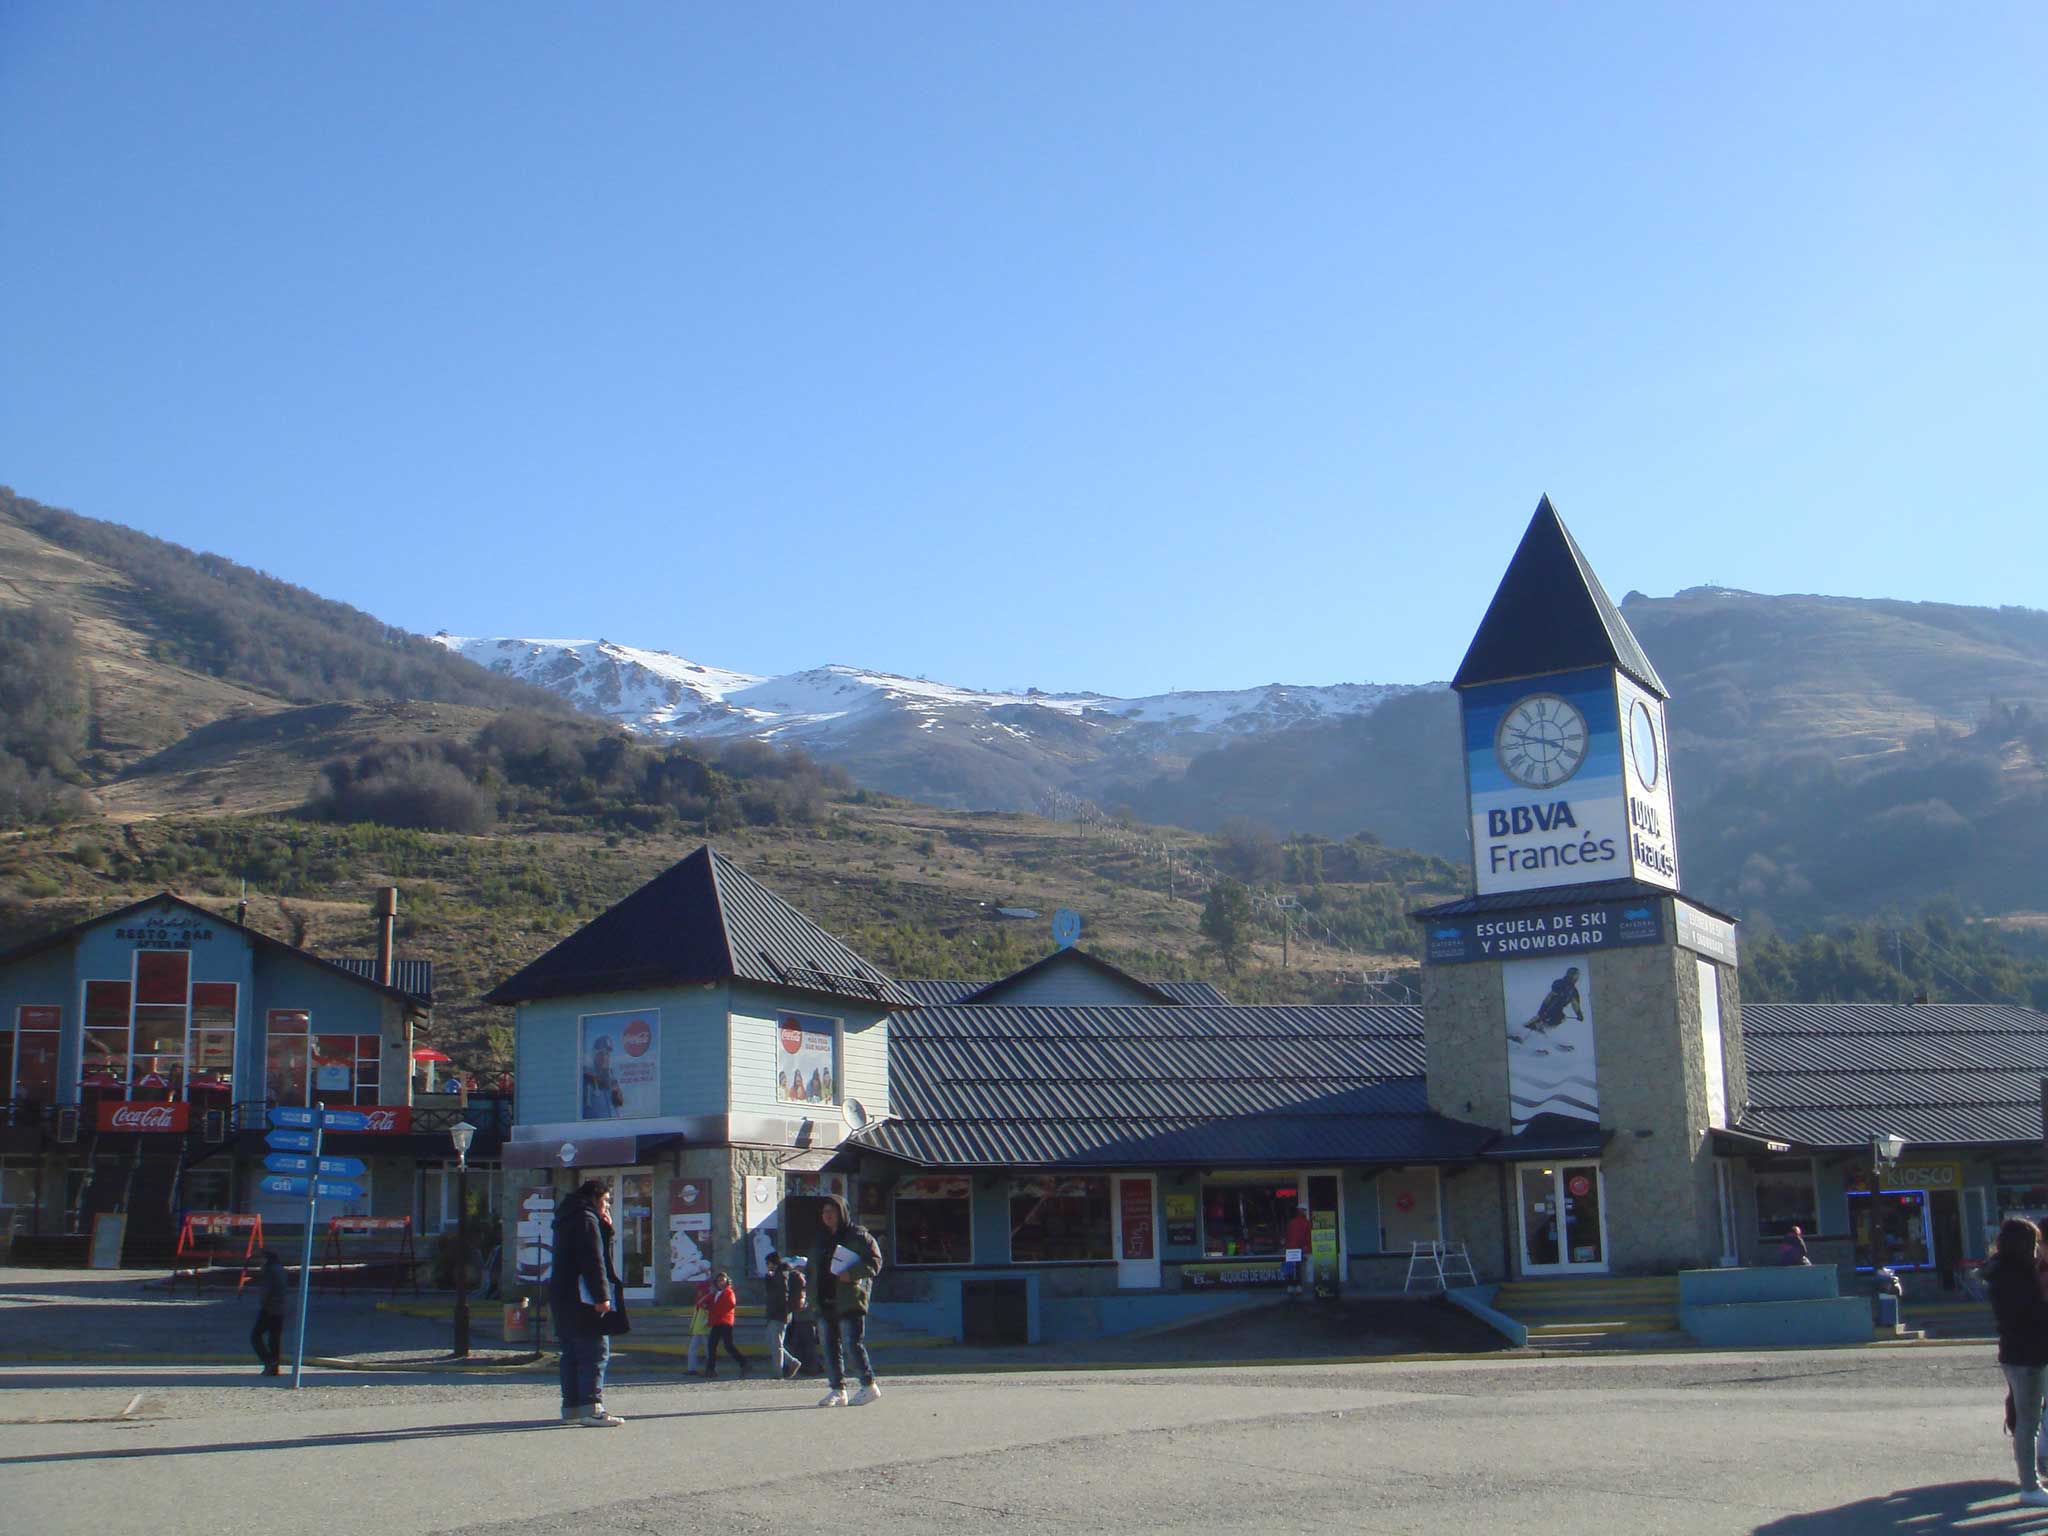 Entrada do Cerro Catedral, estação de sli e snowboard